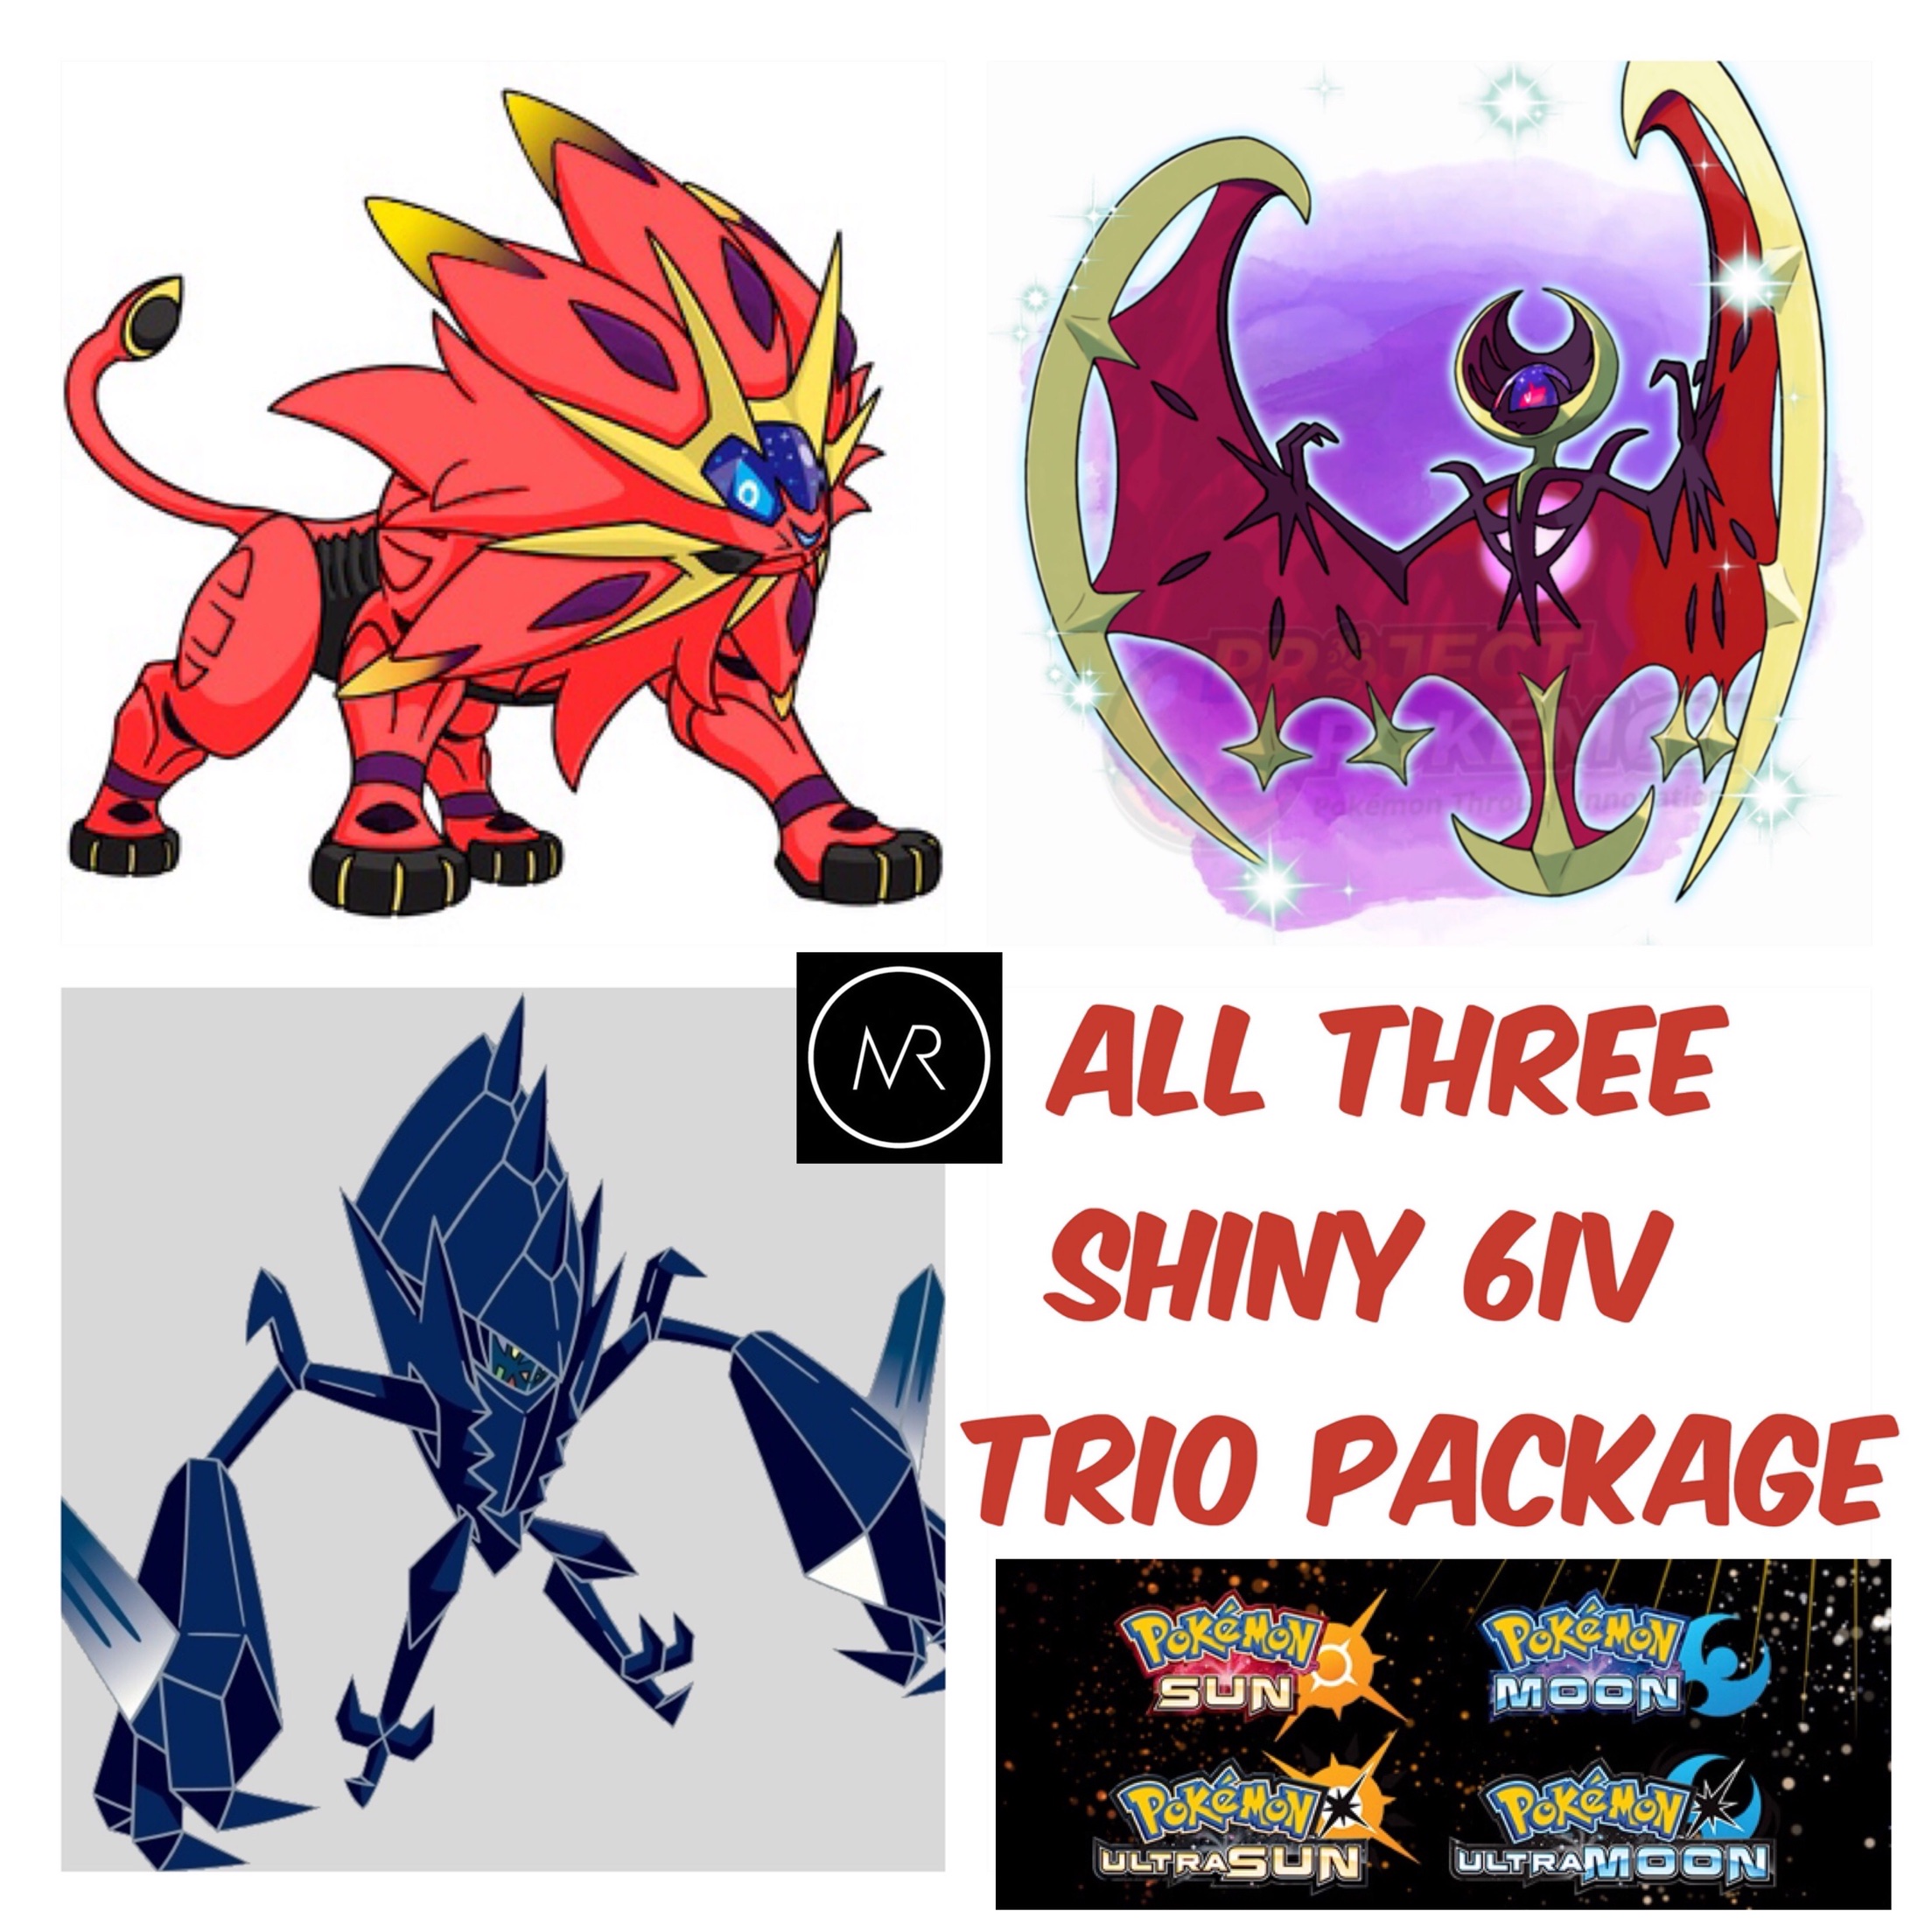 Alola Shiny Legendary Trio (3x, 6IV, Shiny, Battle Ready) – Pokemon  Ultra/Sun/Moon